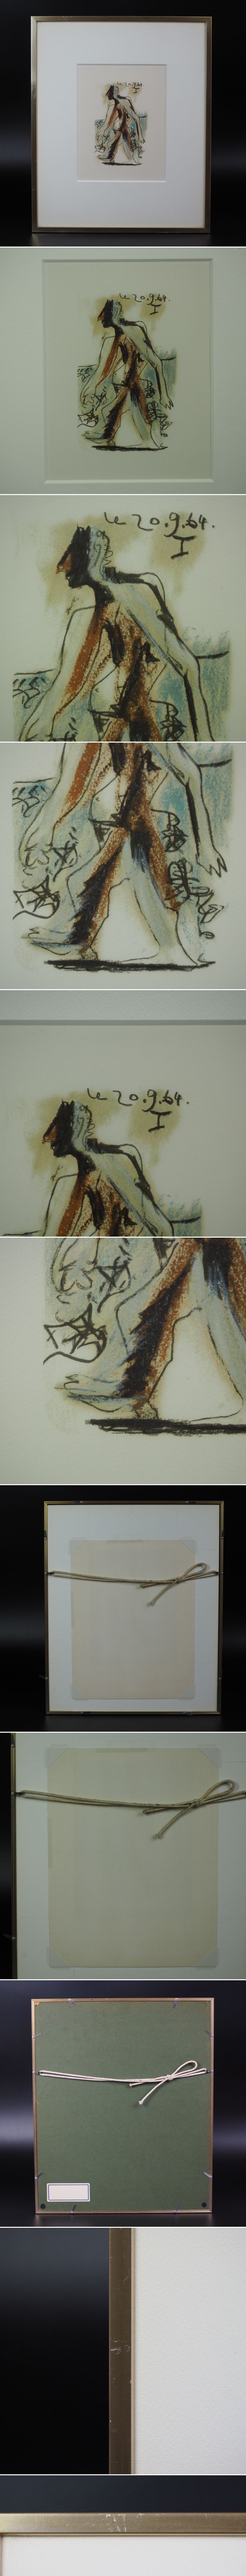 直売純正値下げ中 ピカソ版画　1964年作品 画寸17×10.5ｃｍ 石版画、リトグラフ